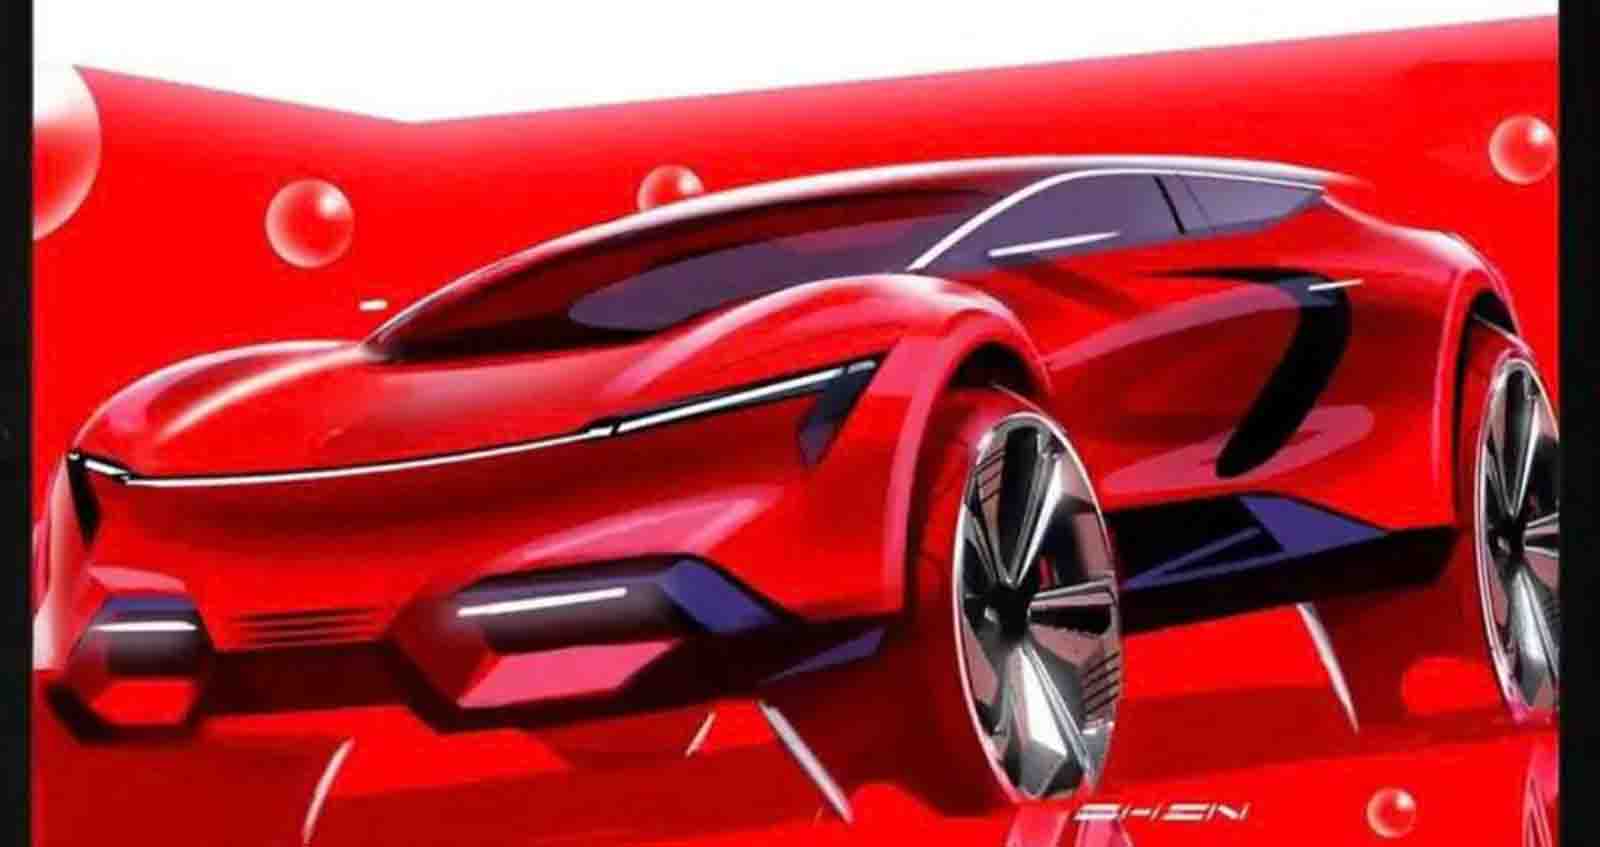 GM Design ปล่อยภาพ Corvette SUV ไฟฟ้า ในจินตนาการ